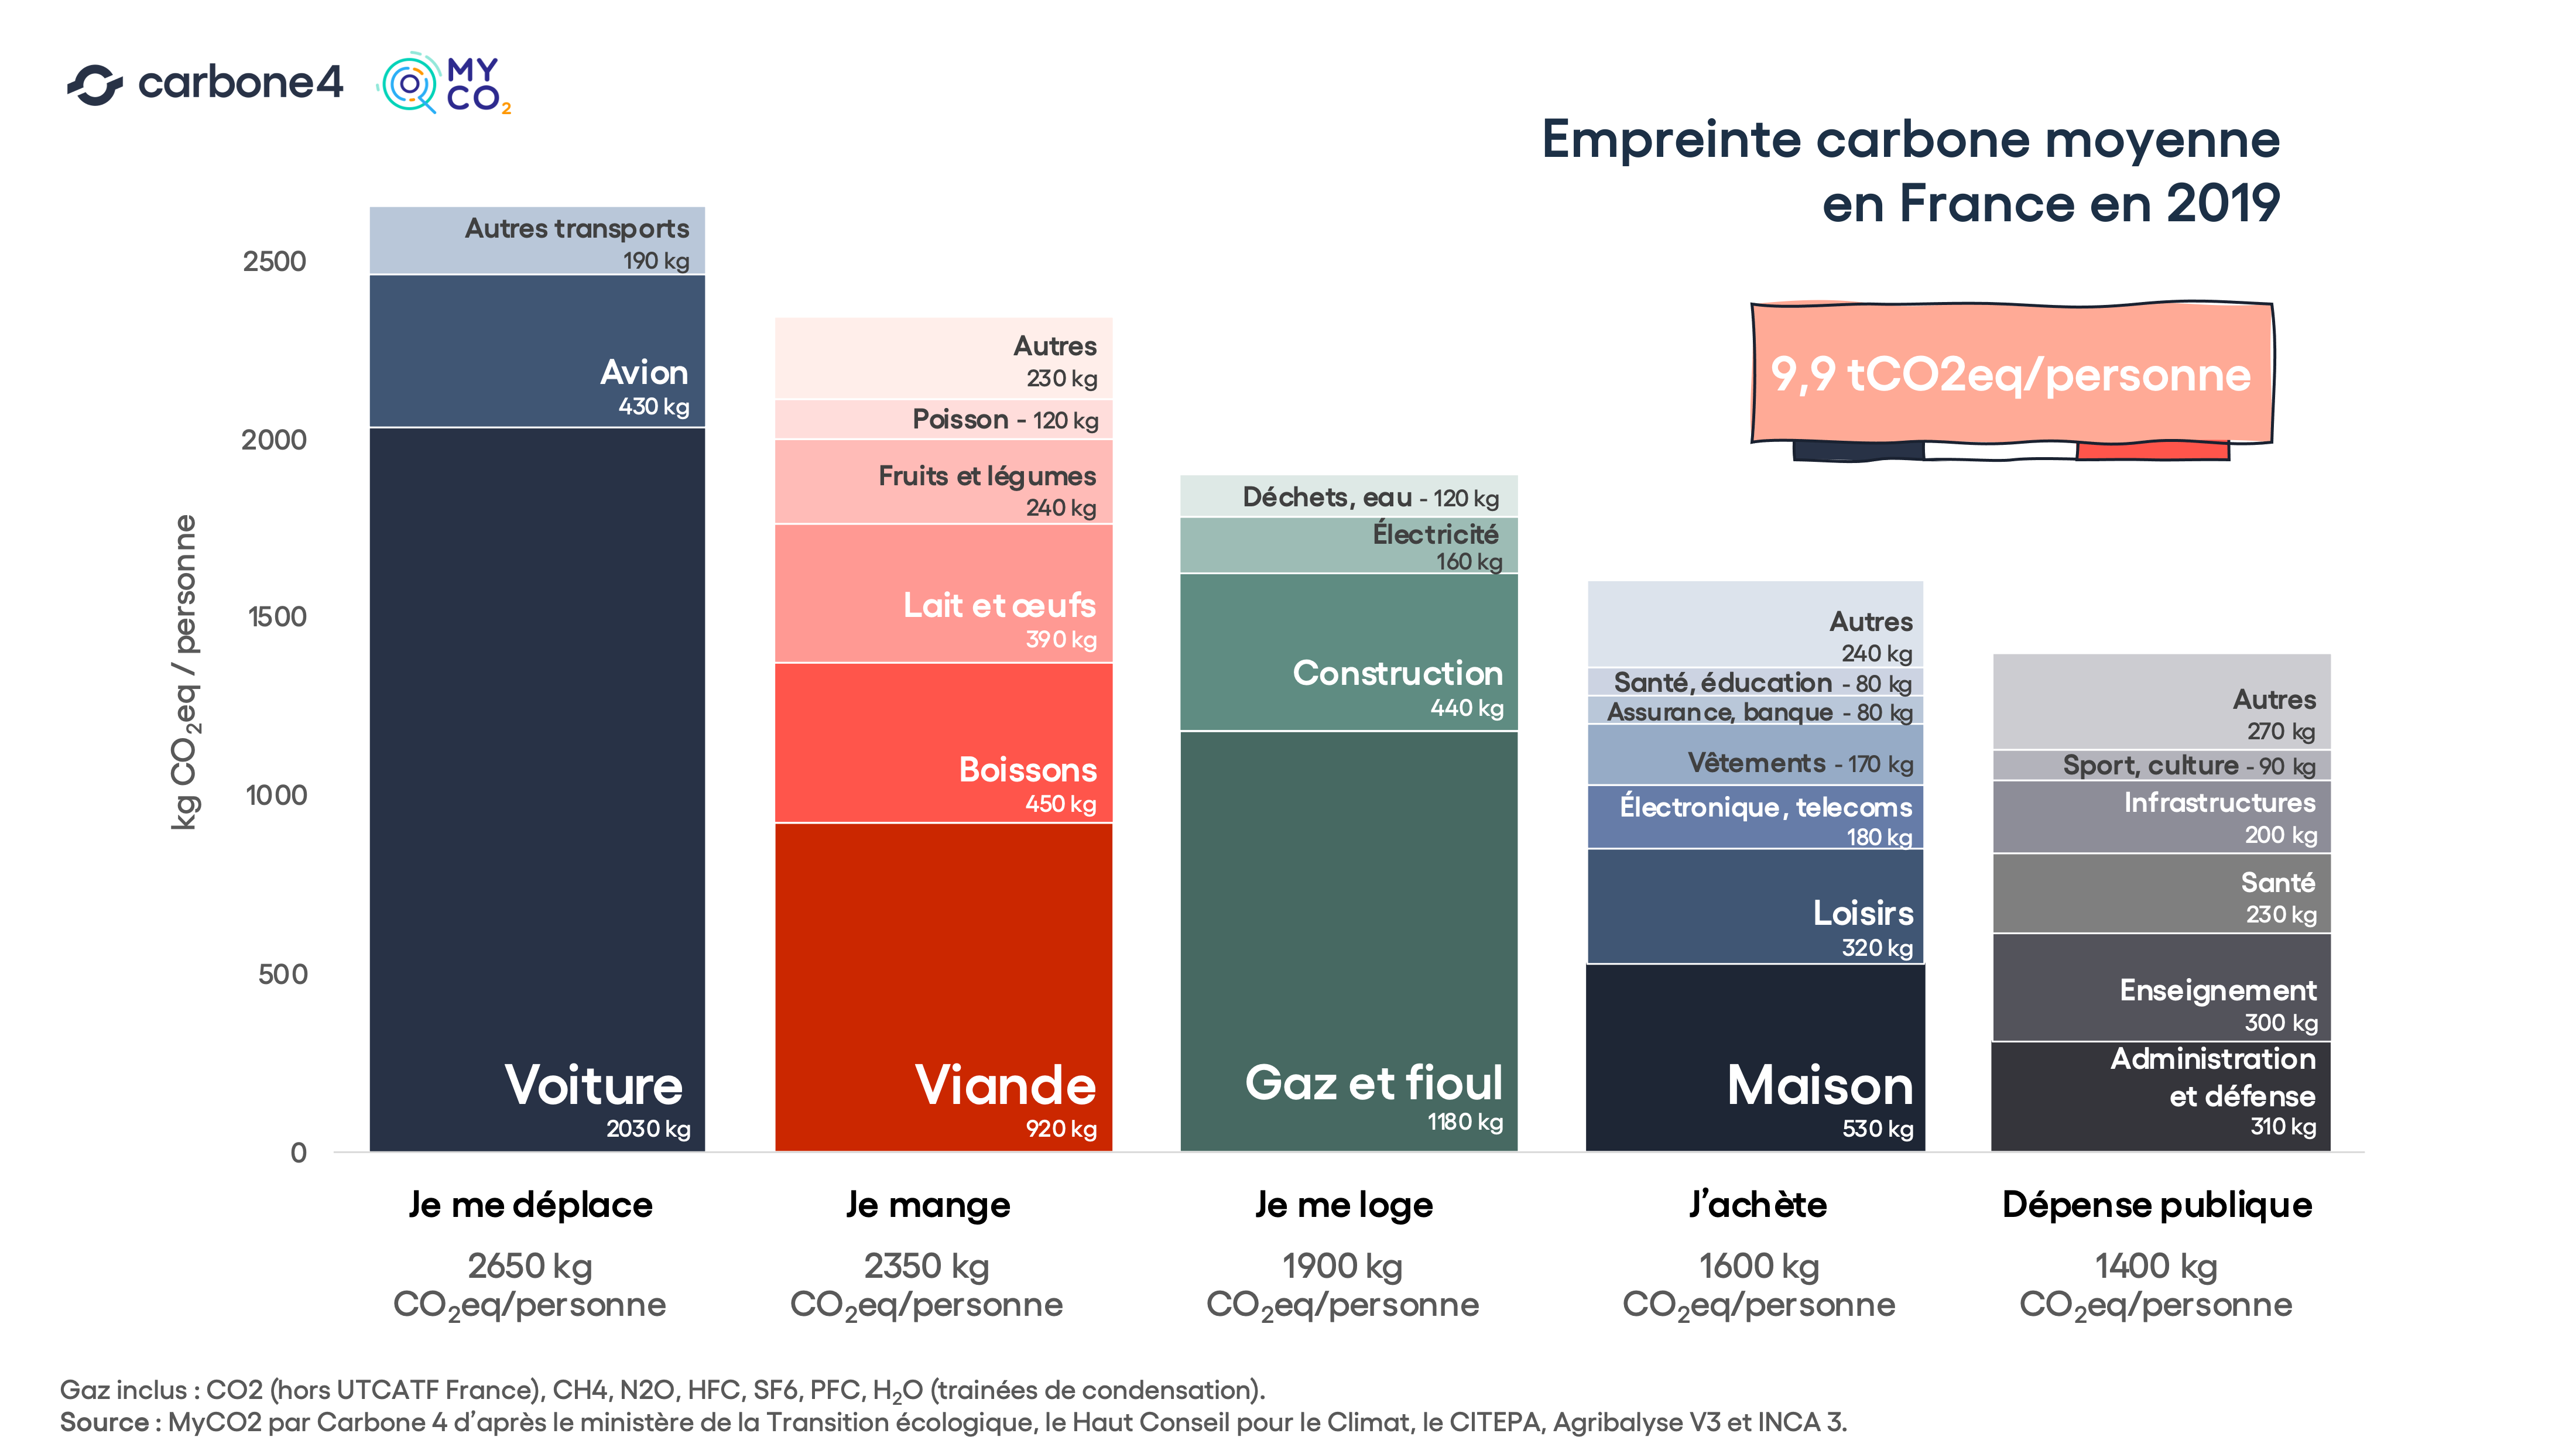 empreinte carbone française en 2019 par poste d'émission